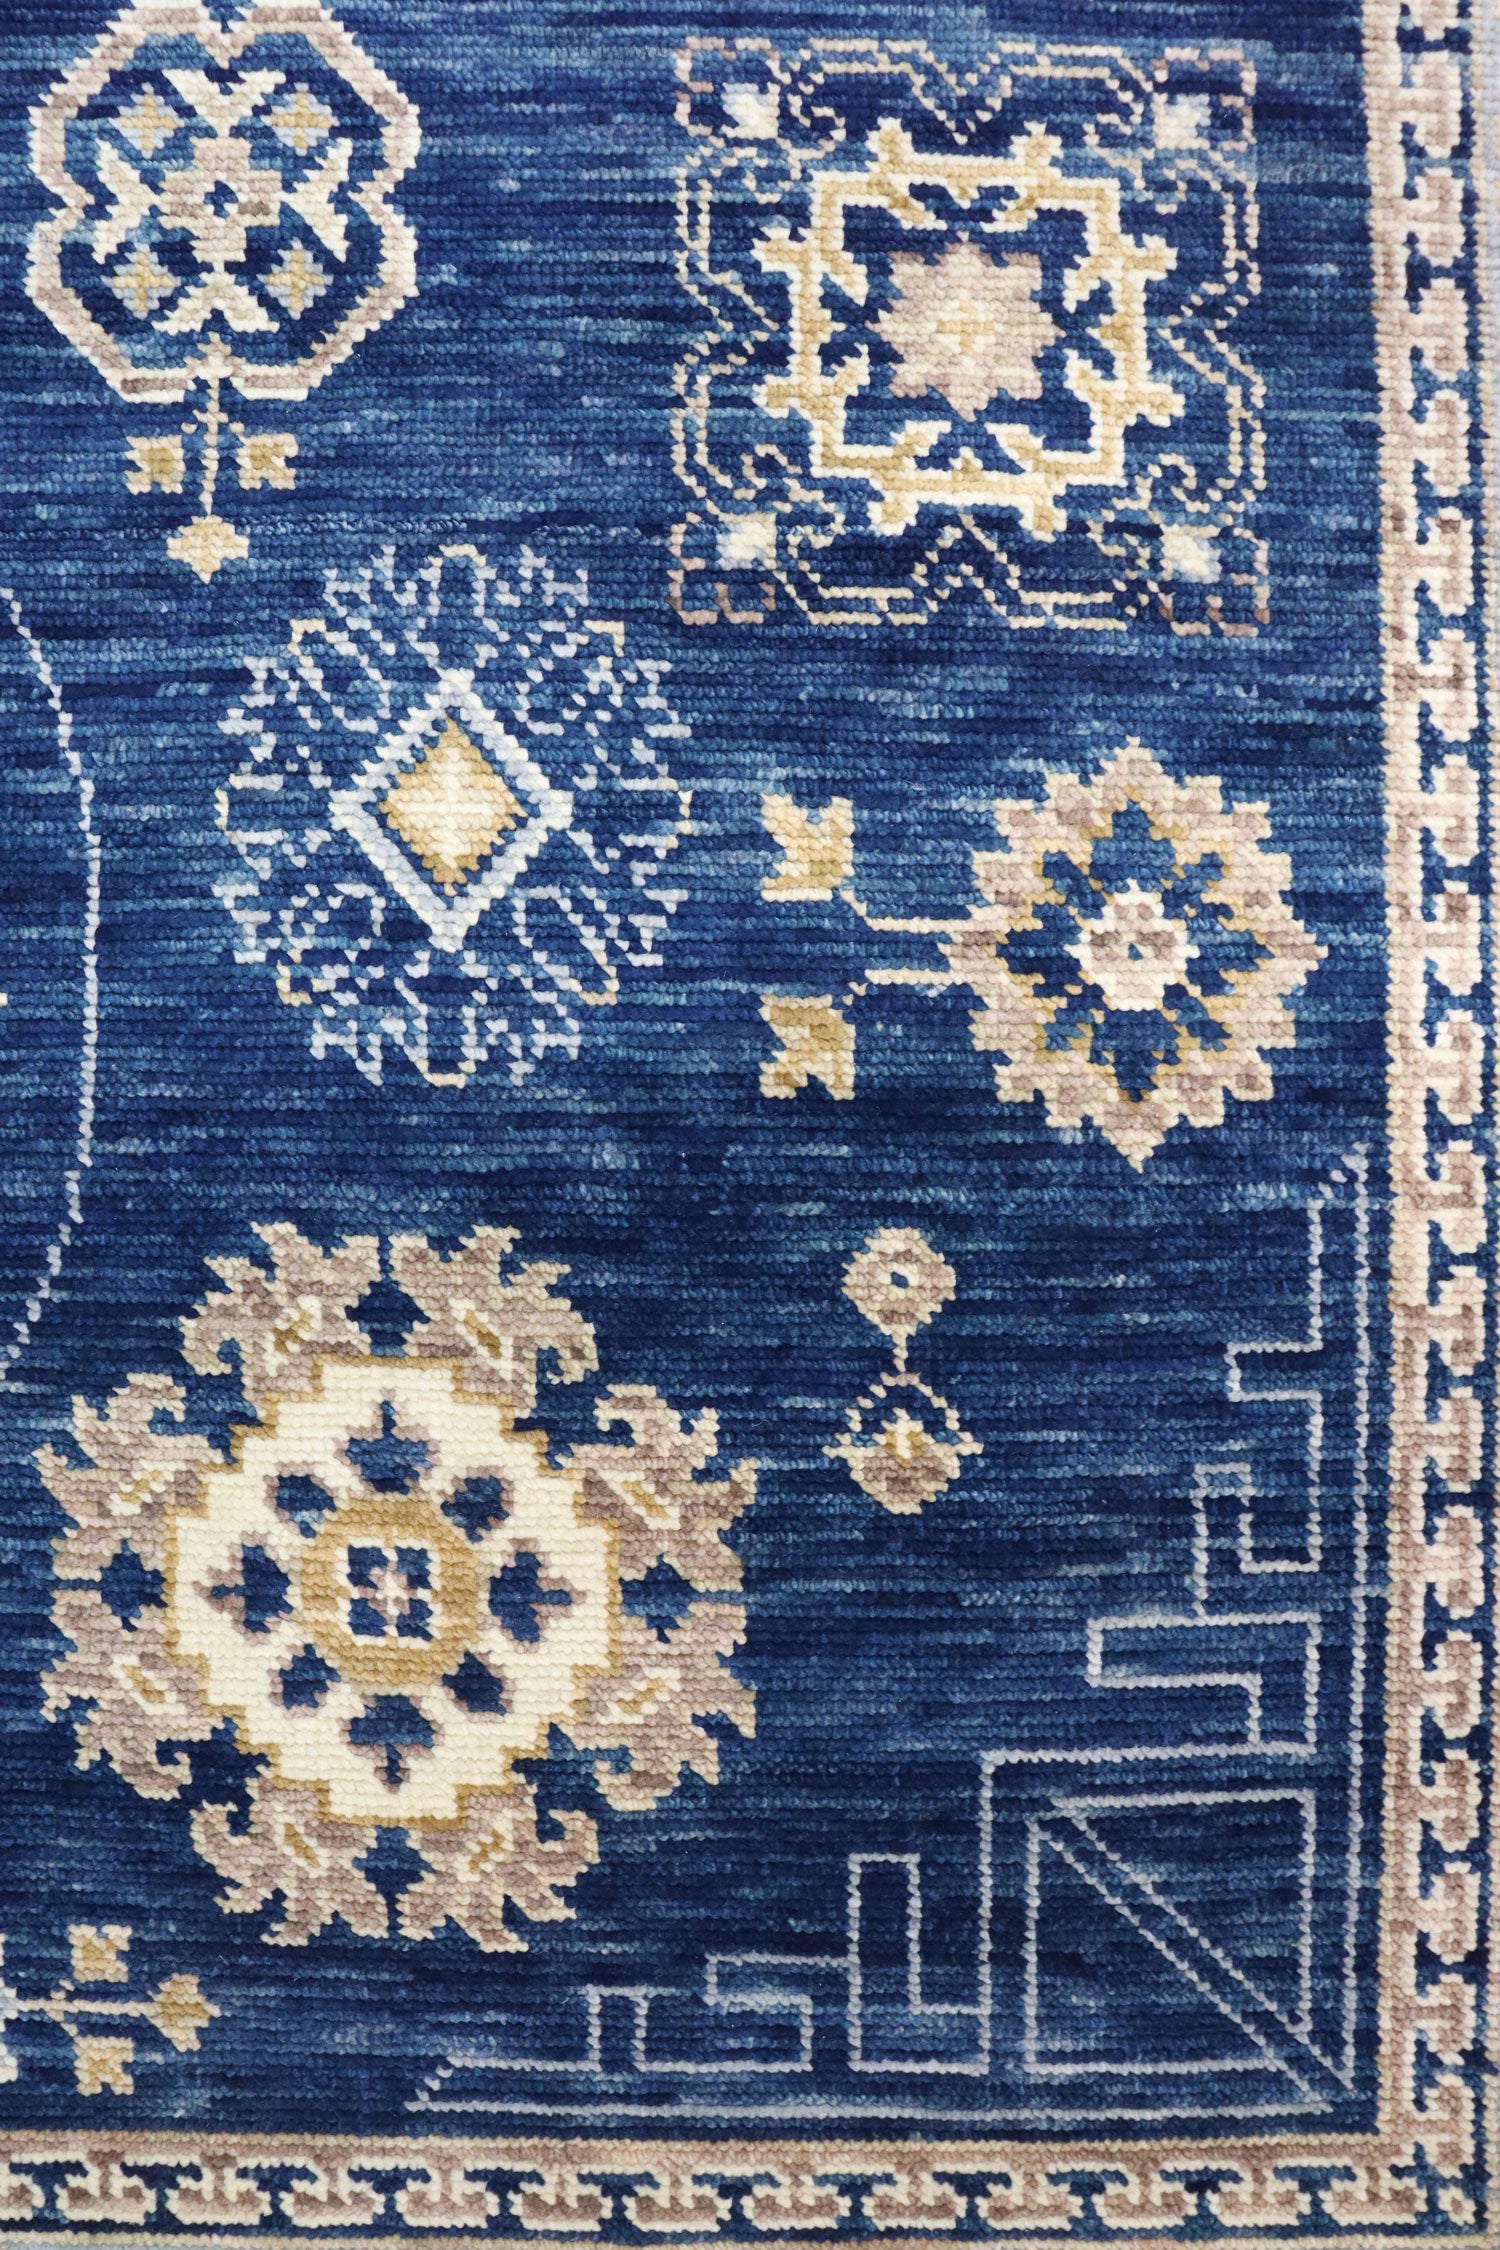 Khotan Handwoven Traditional Rug, J65684